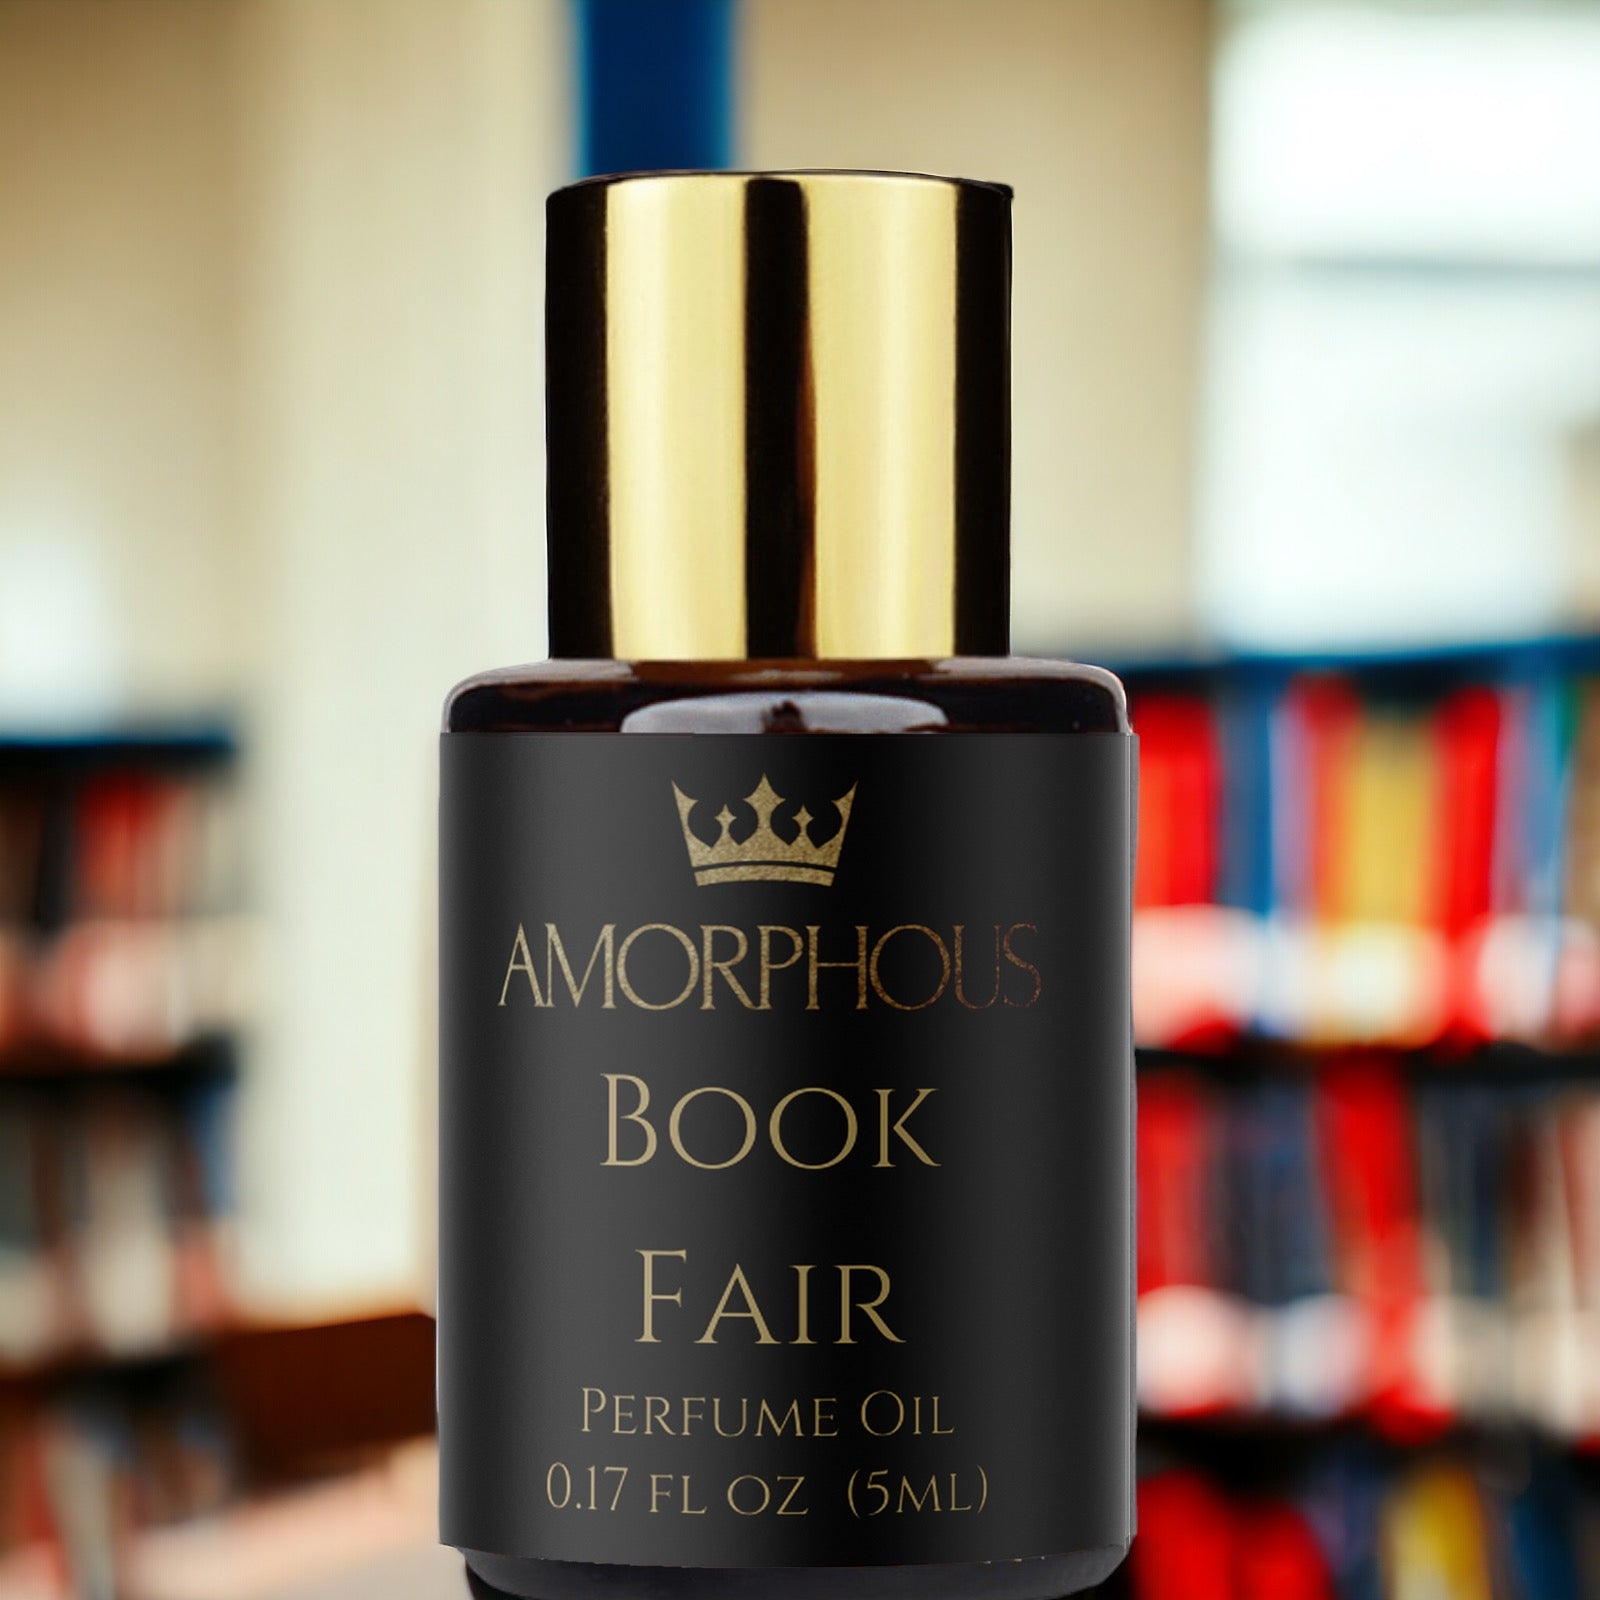 Book Fair perfume